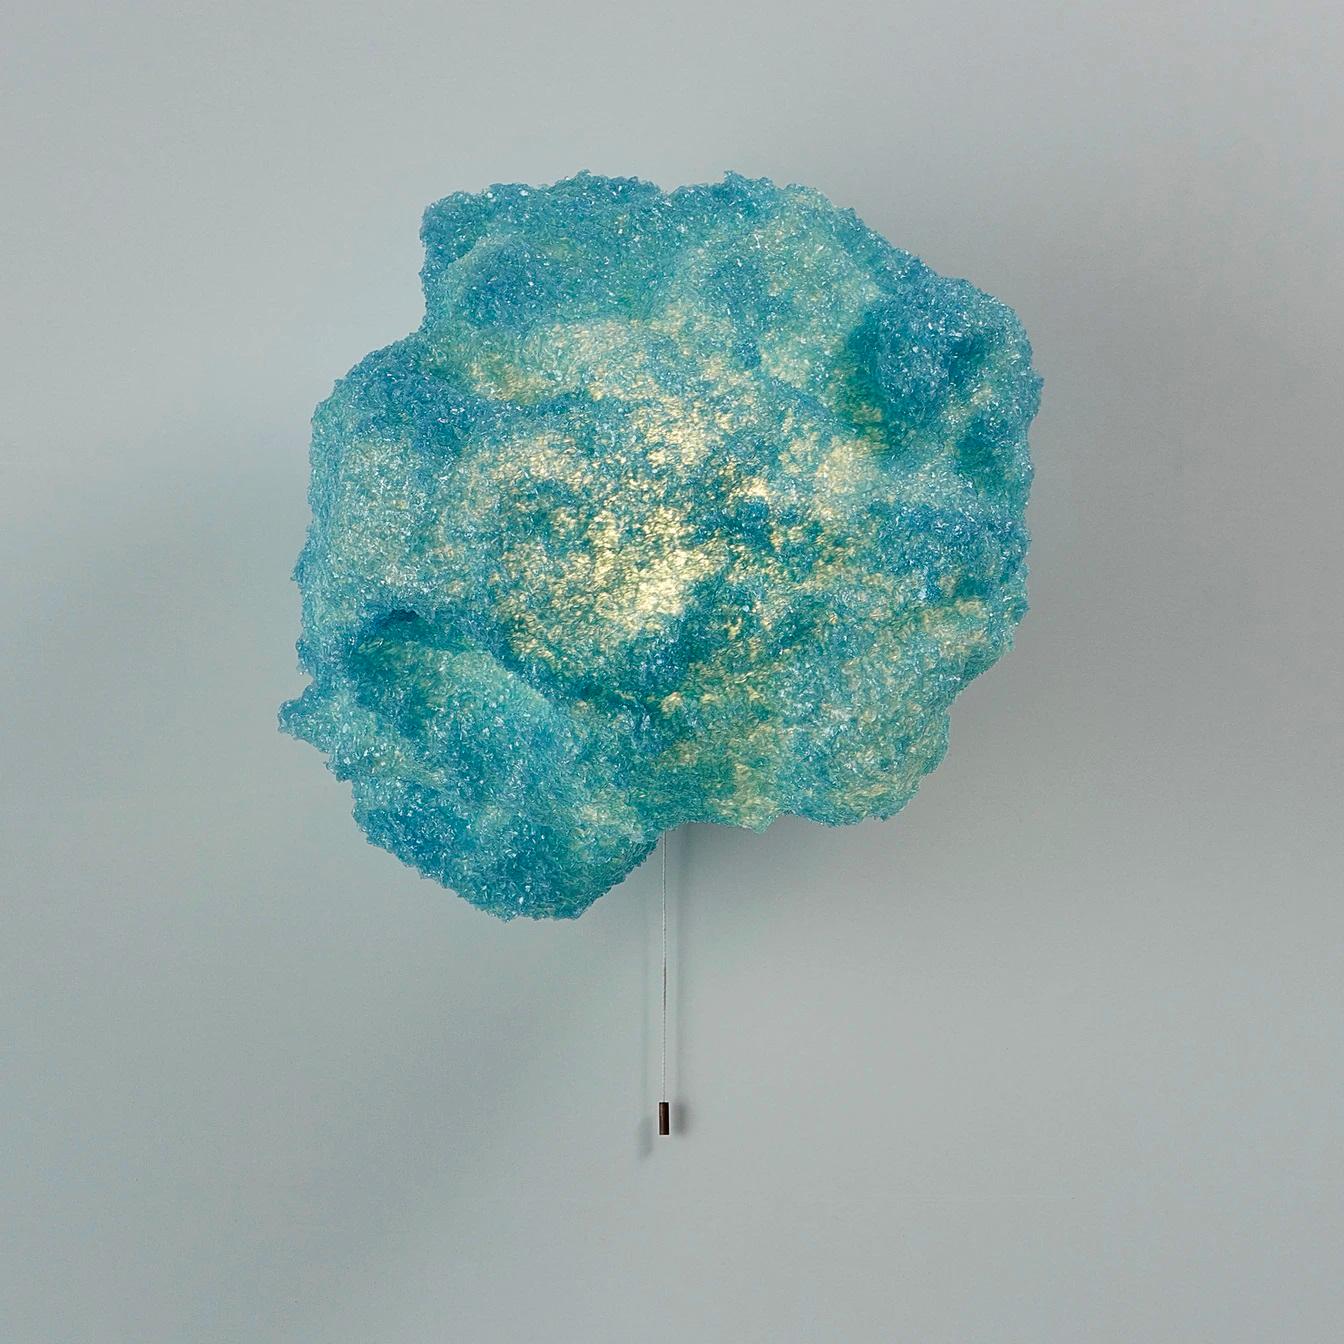 Lampe de table tempête bleue en cuivre de Johannes Hemann
Matériau : polycarbonate, cuivre
Dimensions : Ø 43 cm

La série Storm est, de par son concept, l'exemple le plus pur d'un processus de conception, où le concepteur cherche à fixer des